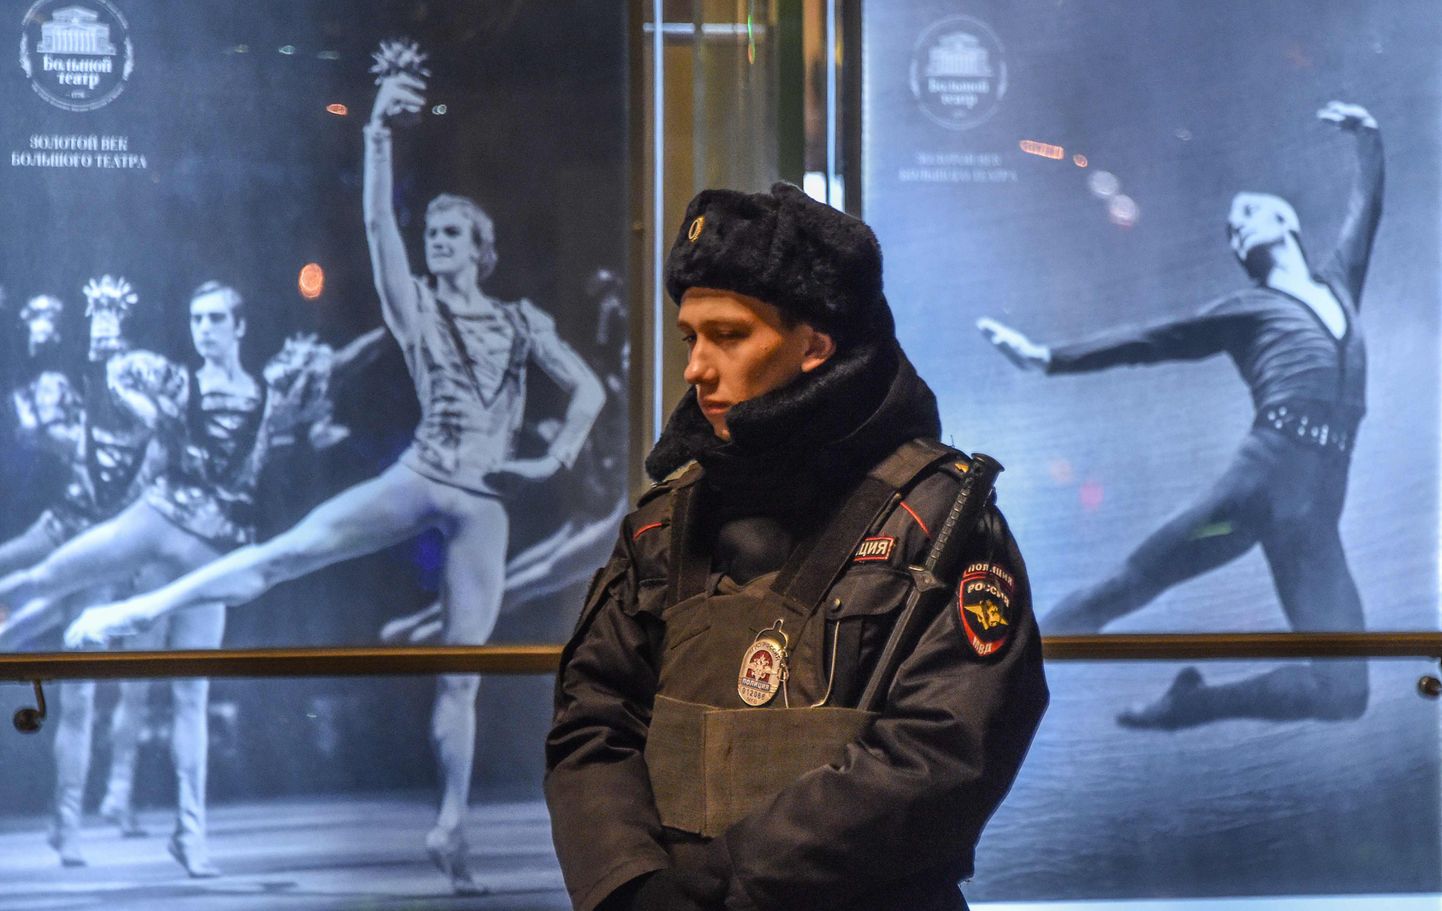 Venemaal Bolšoi teatri ees valvav politseinik. Teater on vaid üks hoonetest Venemaal, millele pommiähvardus tehti.